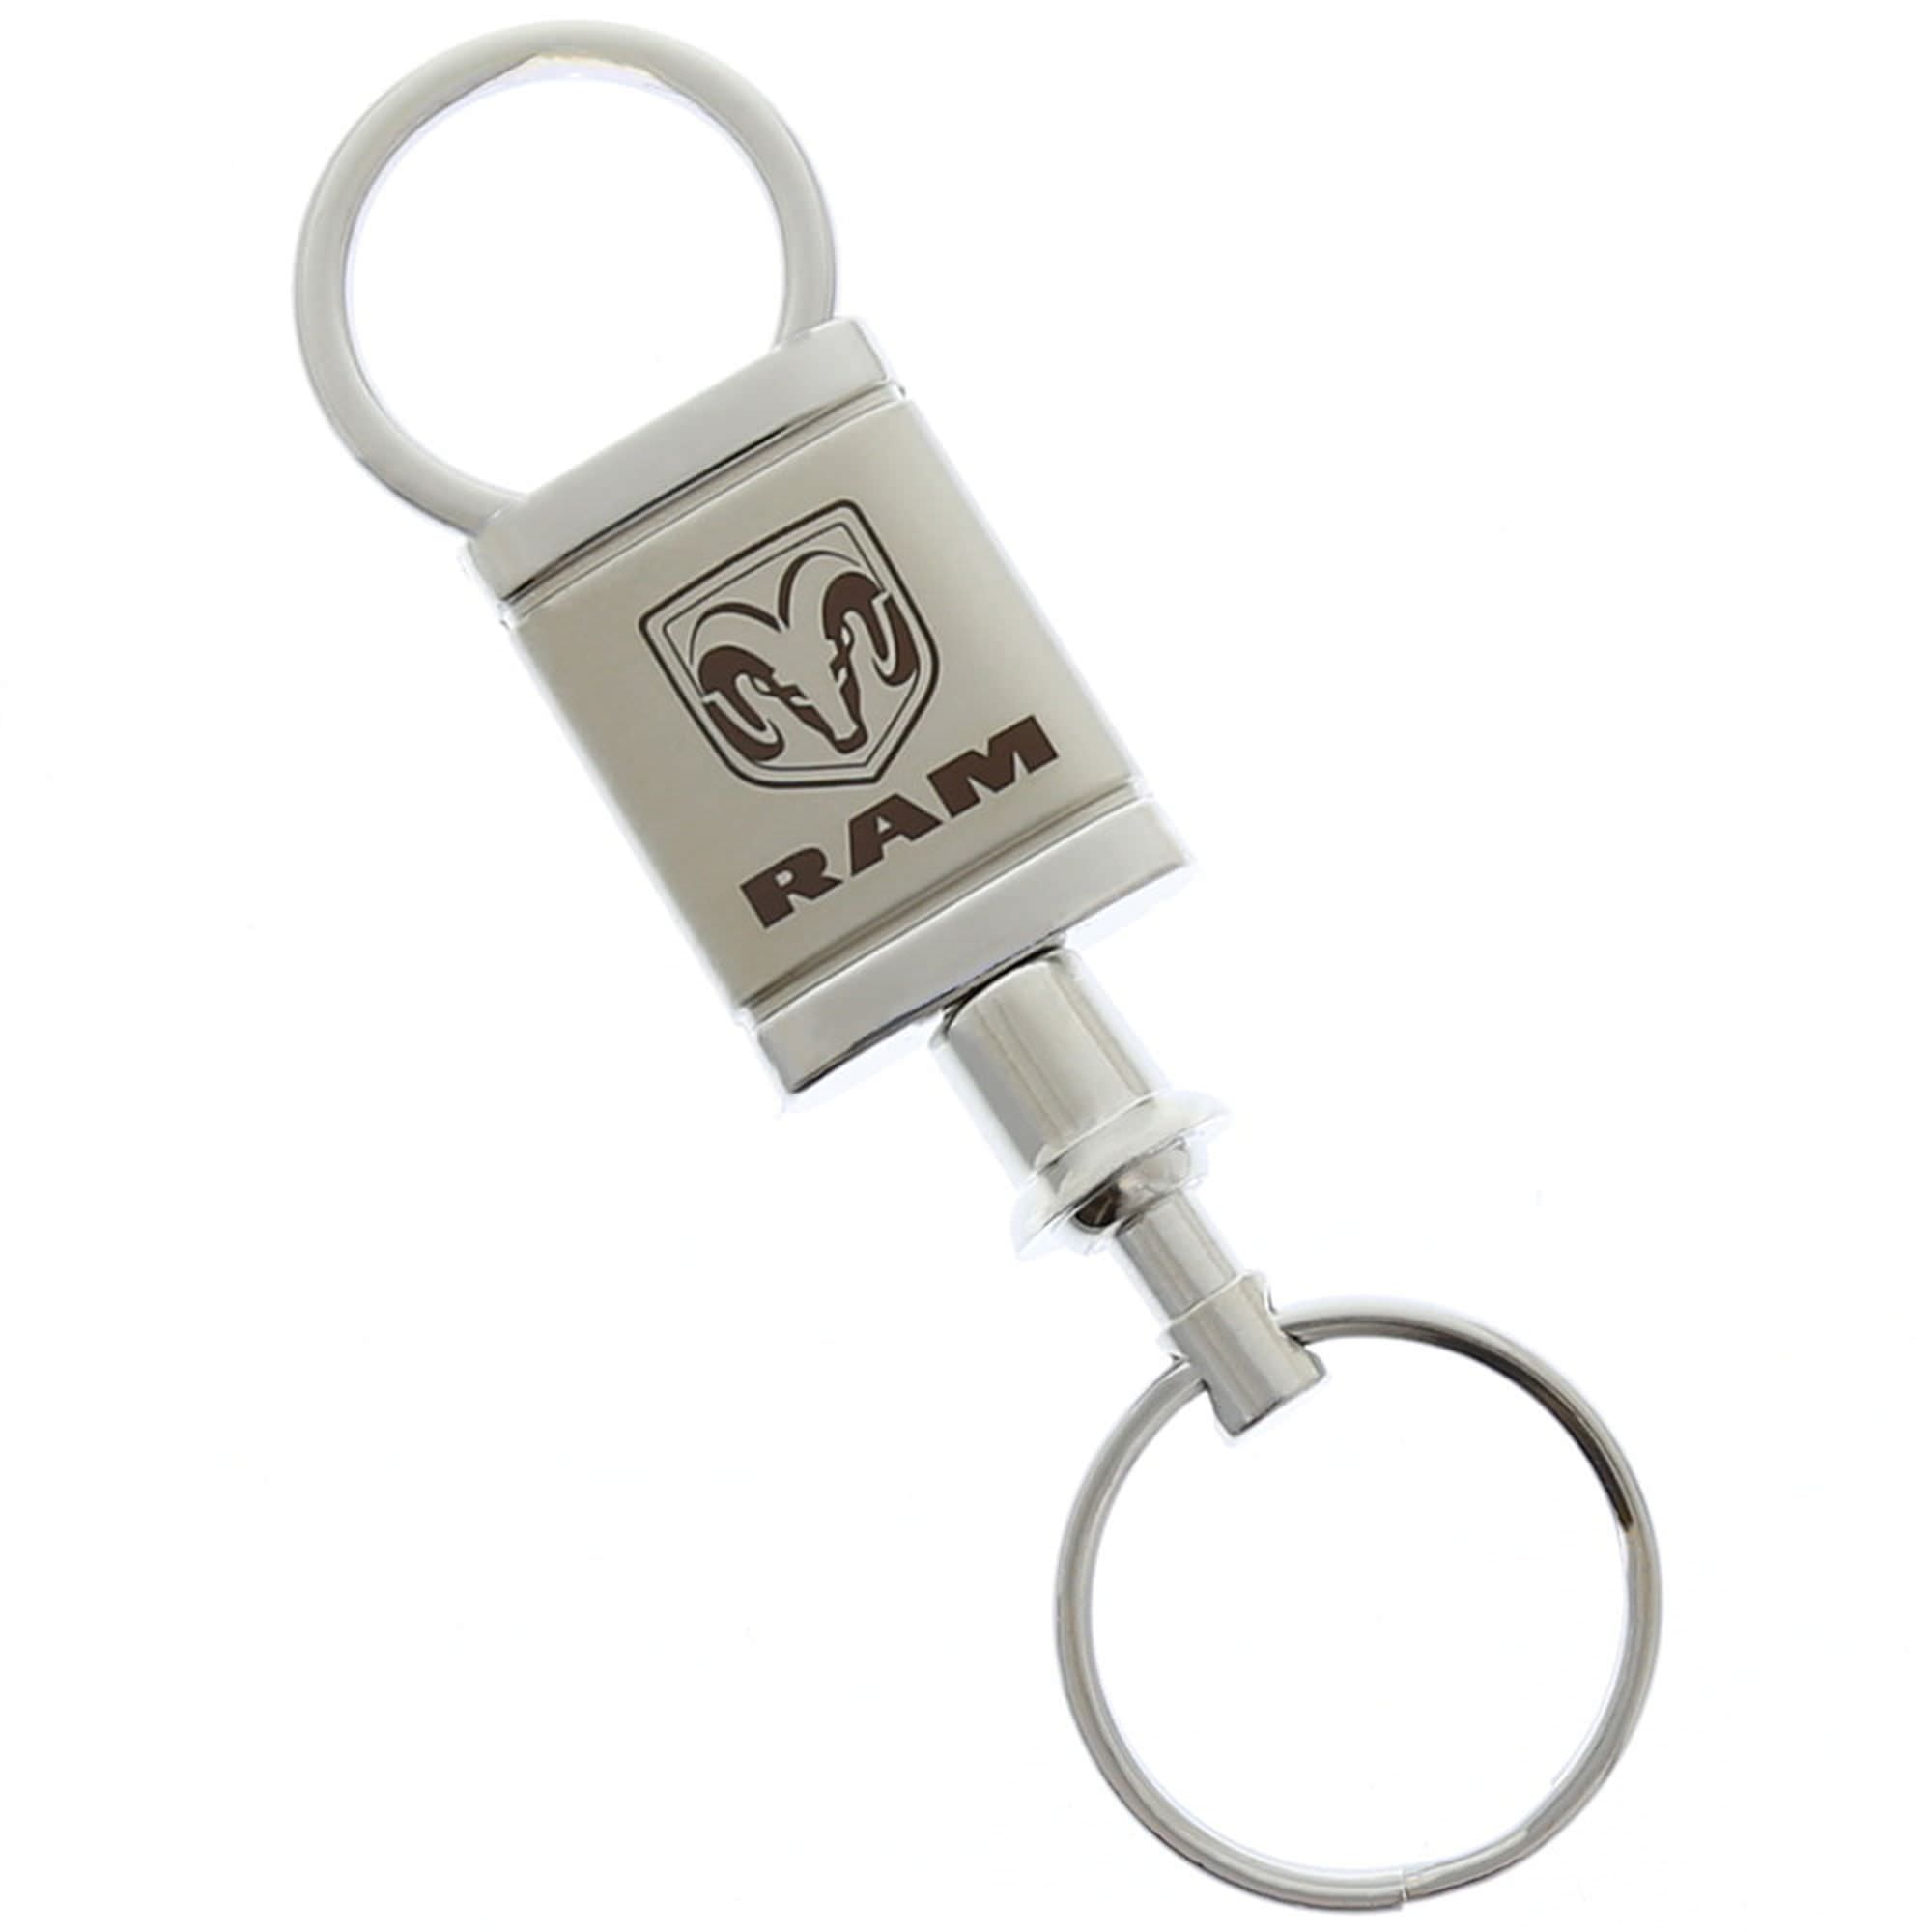 Chrysler Key Chain Black Car Logo Metal Aluminum Valet Pull Apart Ring 